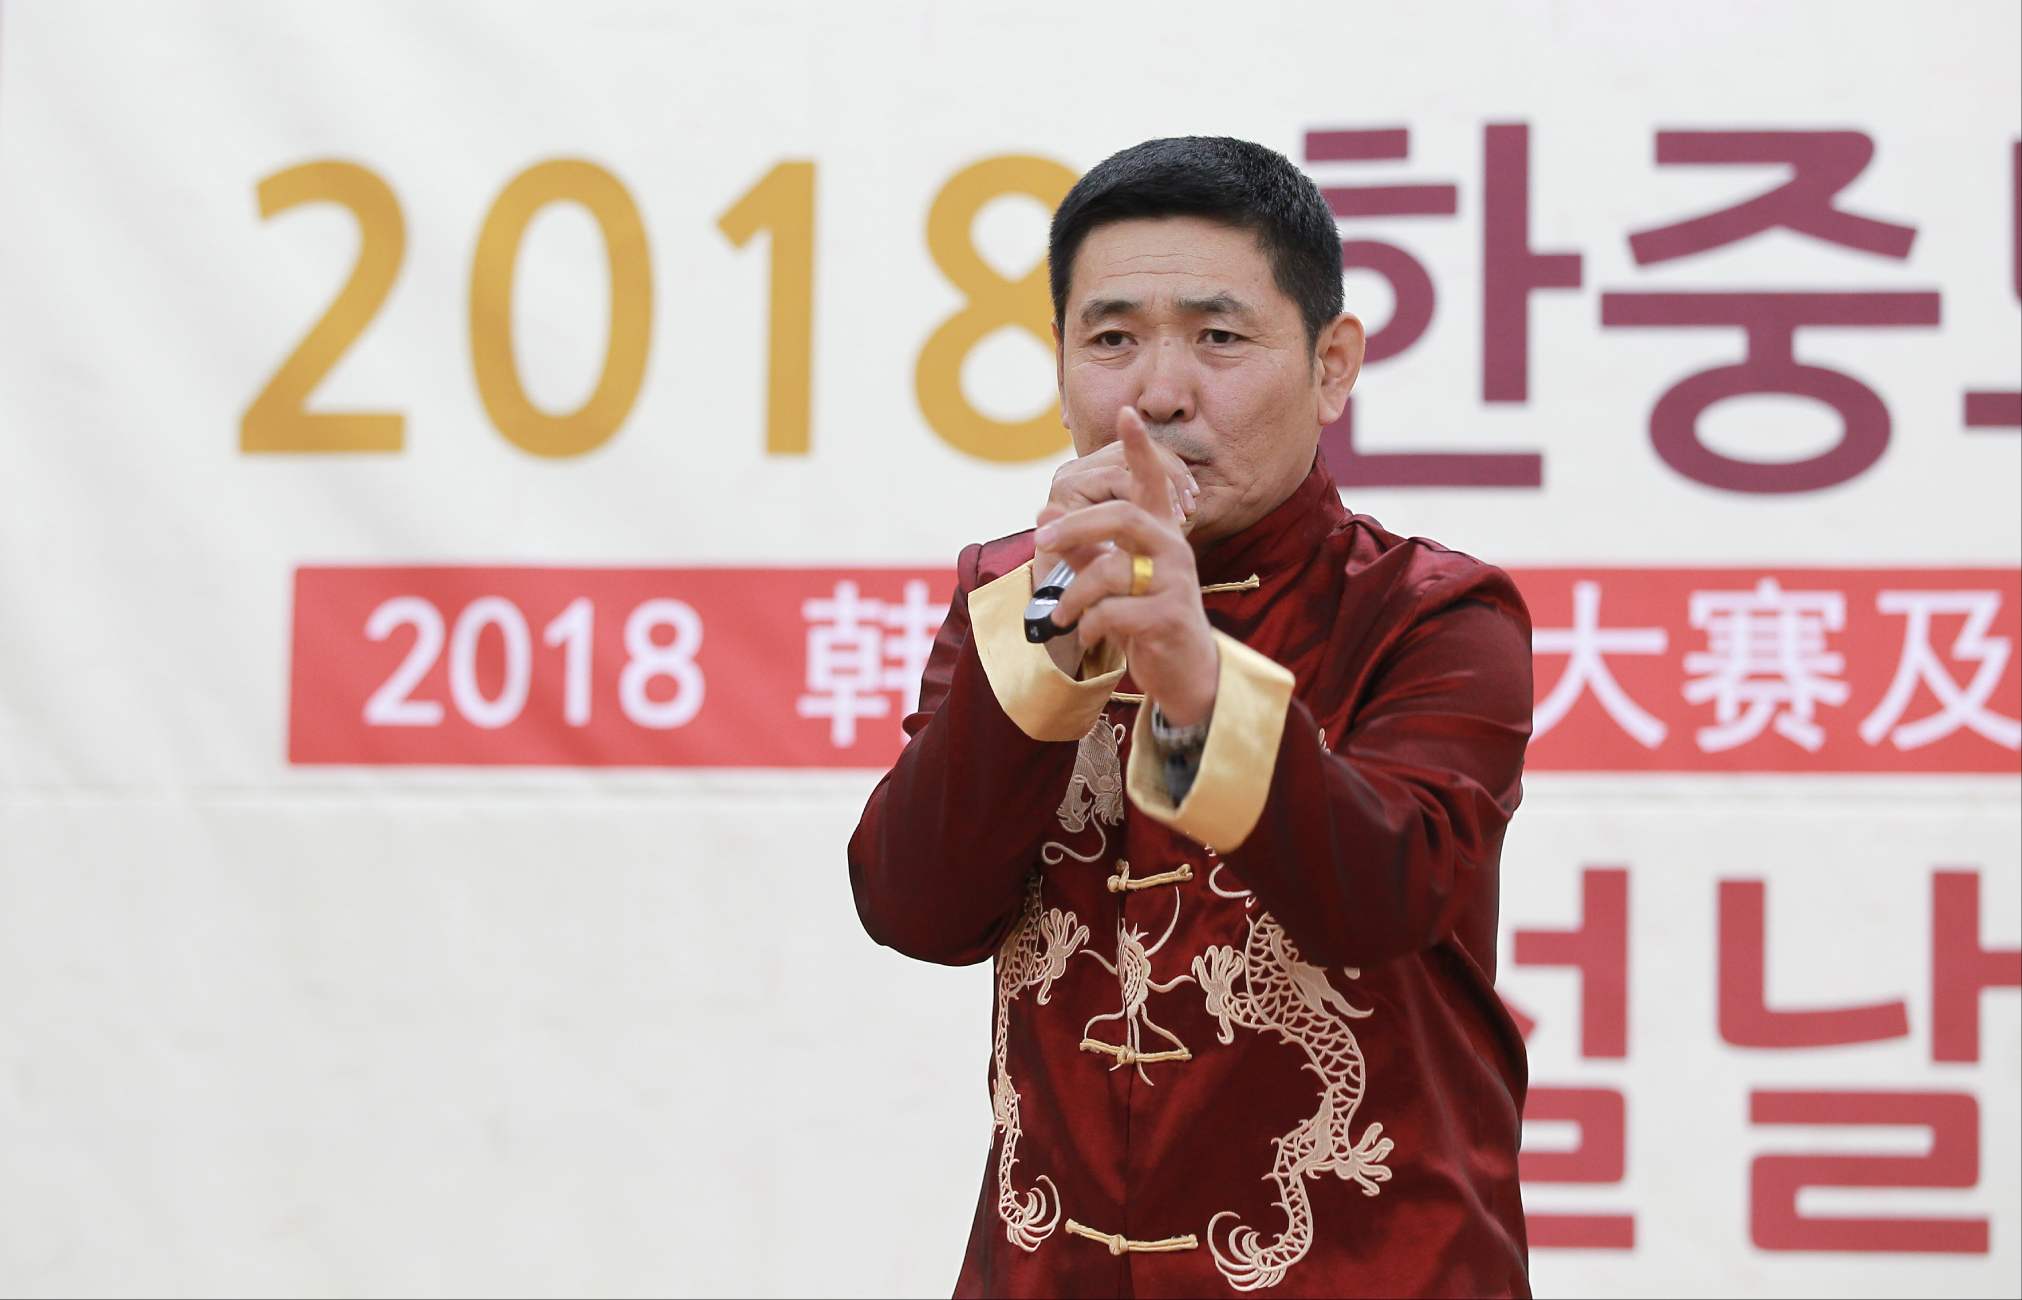 2018韩国华人华侨歌咏大赛暨春节联欢会在首尔九老区厅大礼堂举行